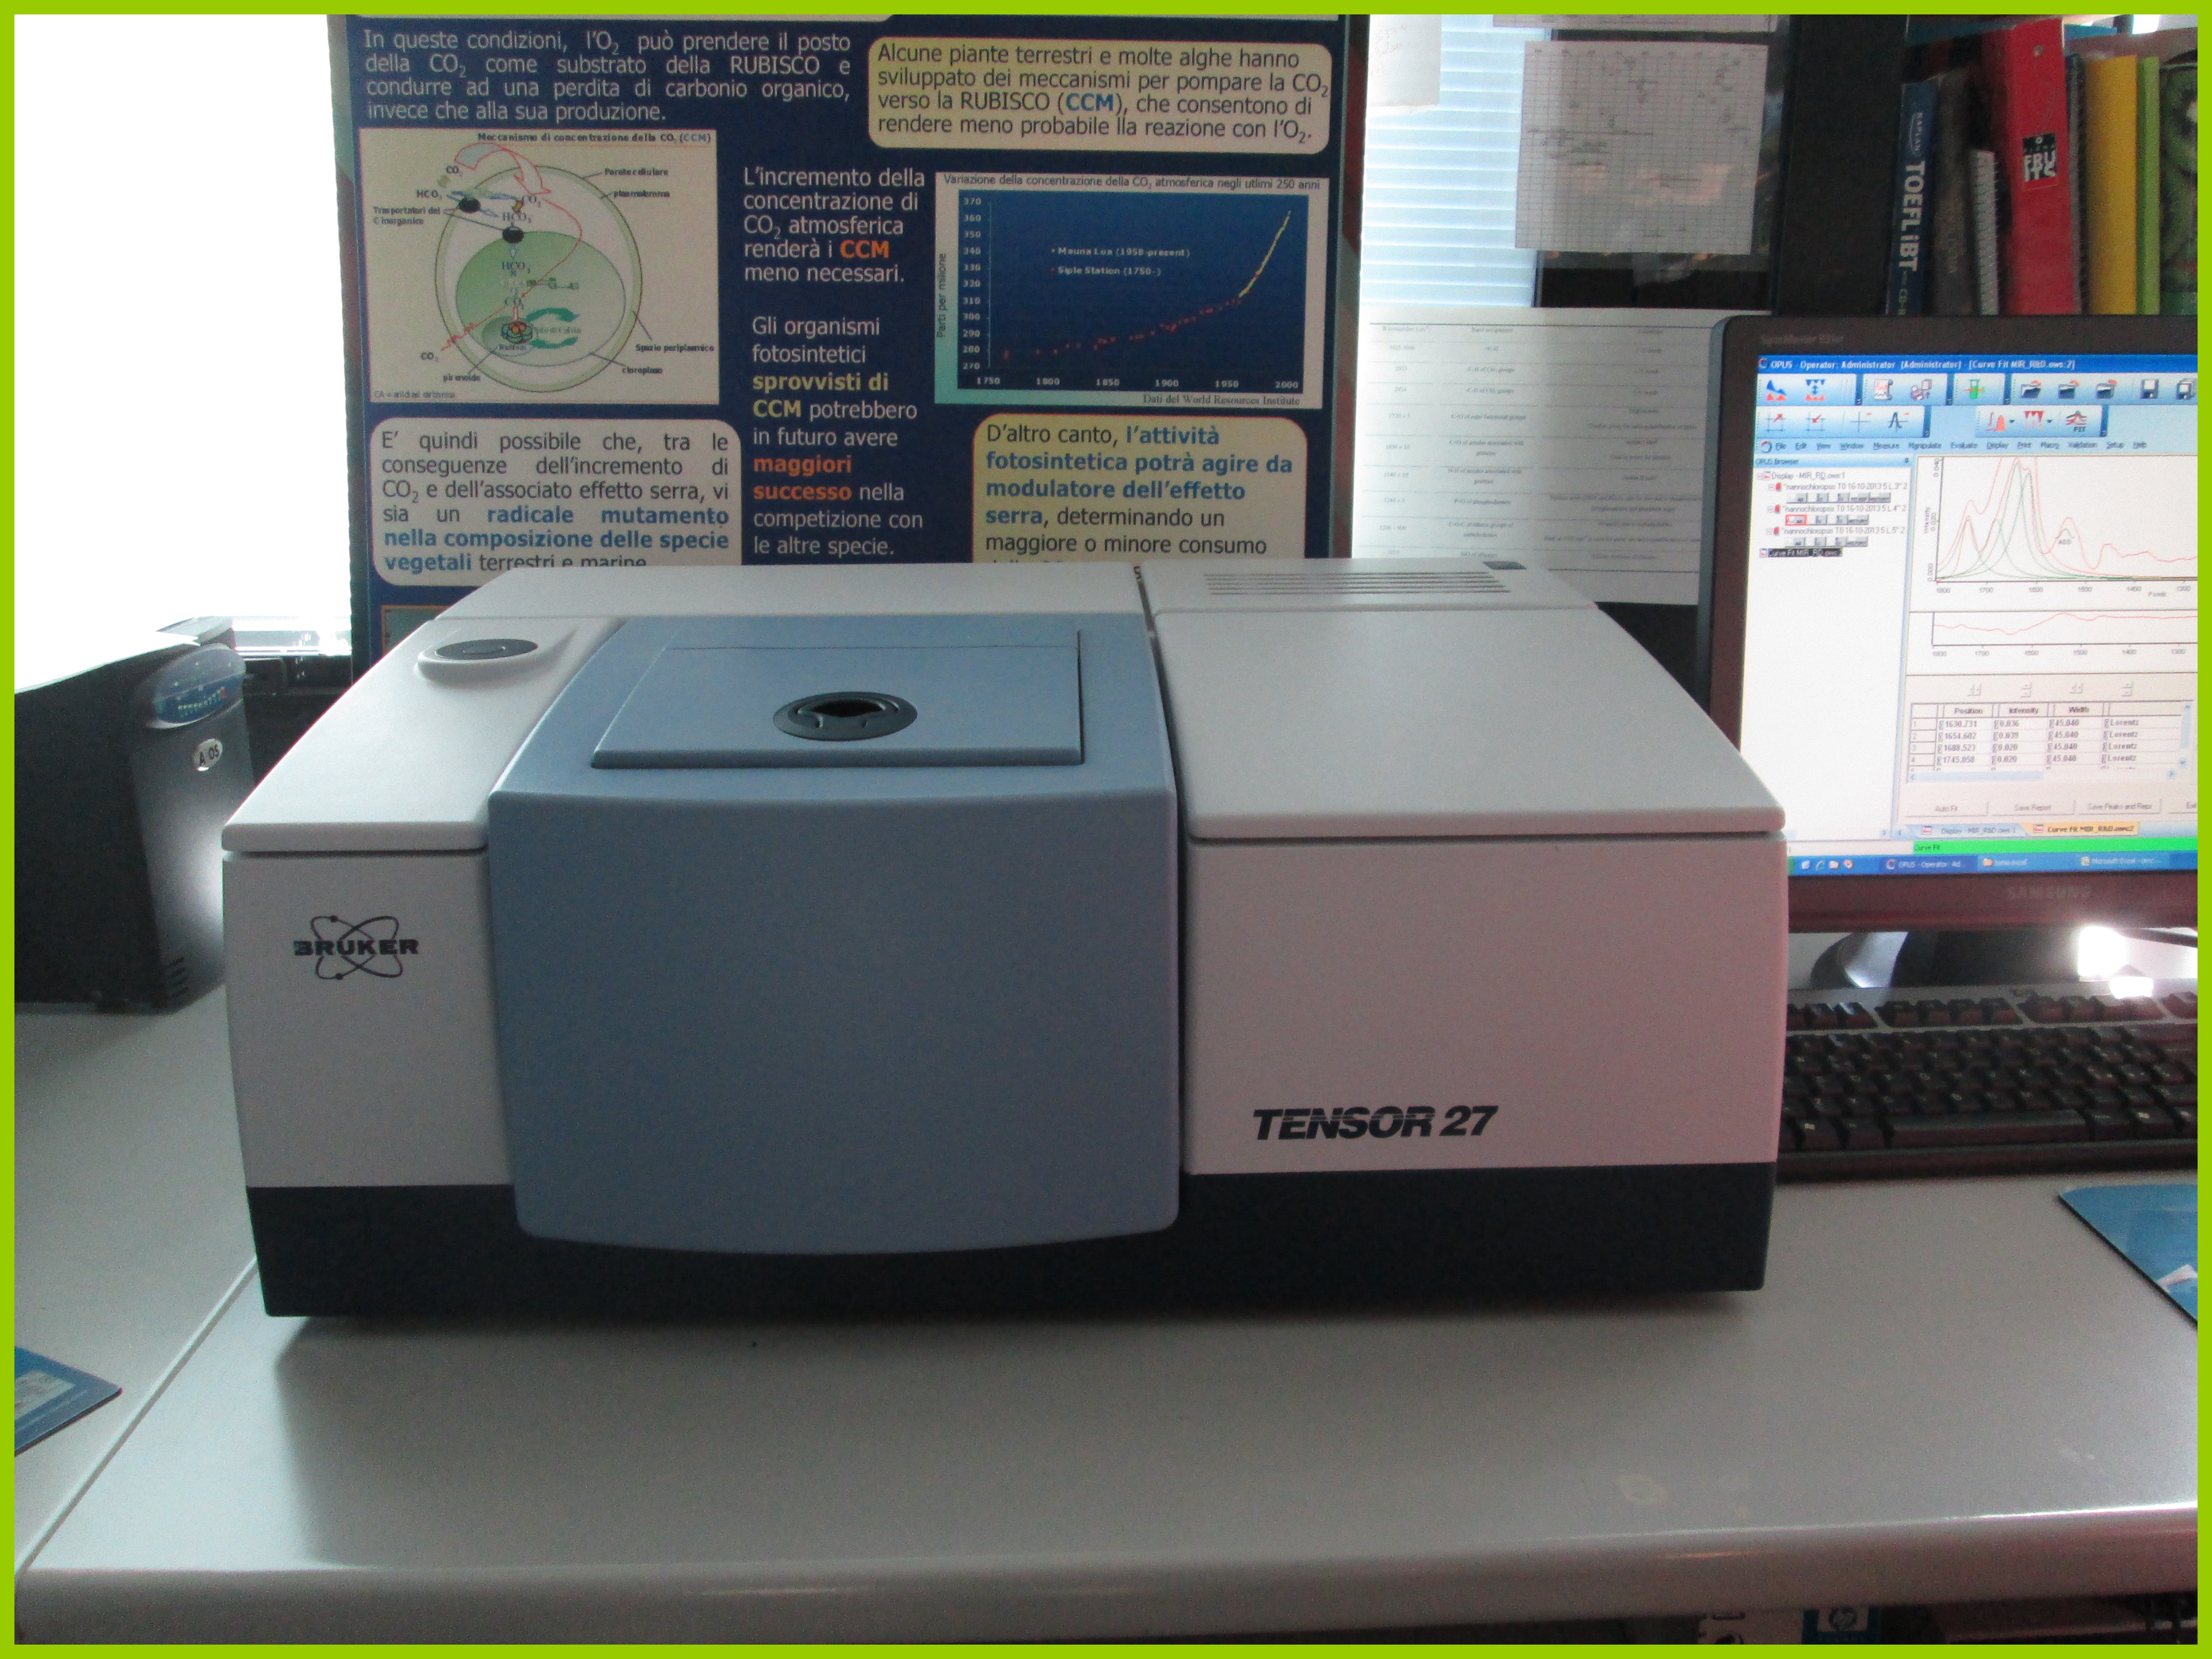 Spettrometro FTIR Tensor 27 (Bruker Optik GmbH)